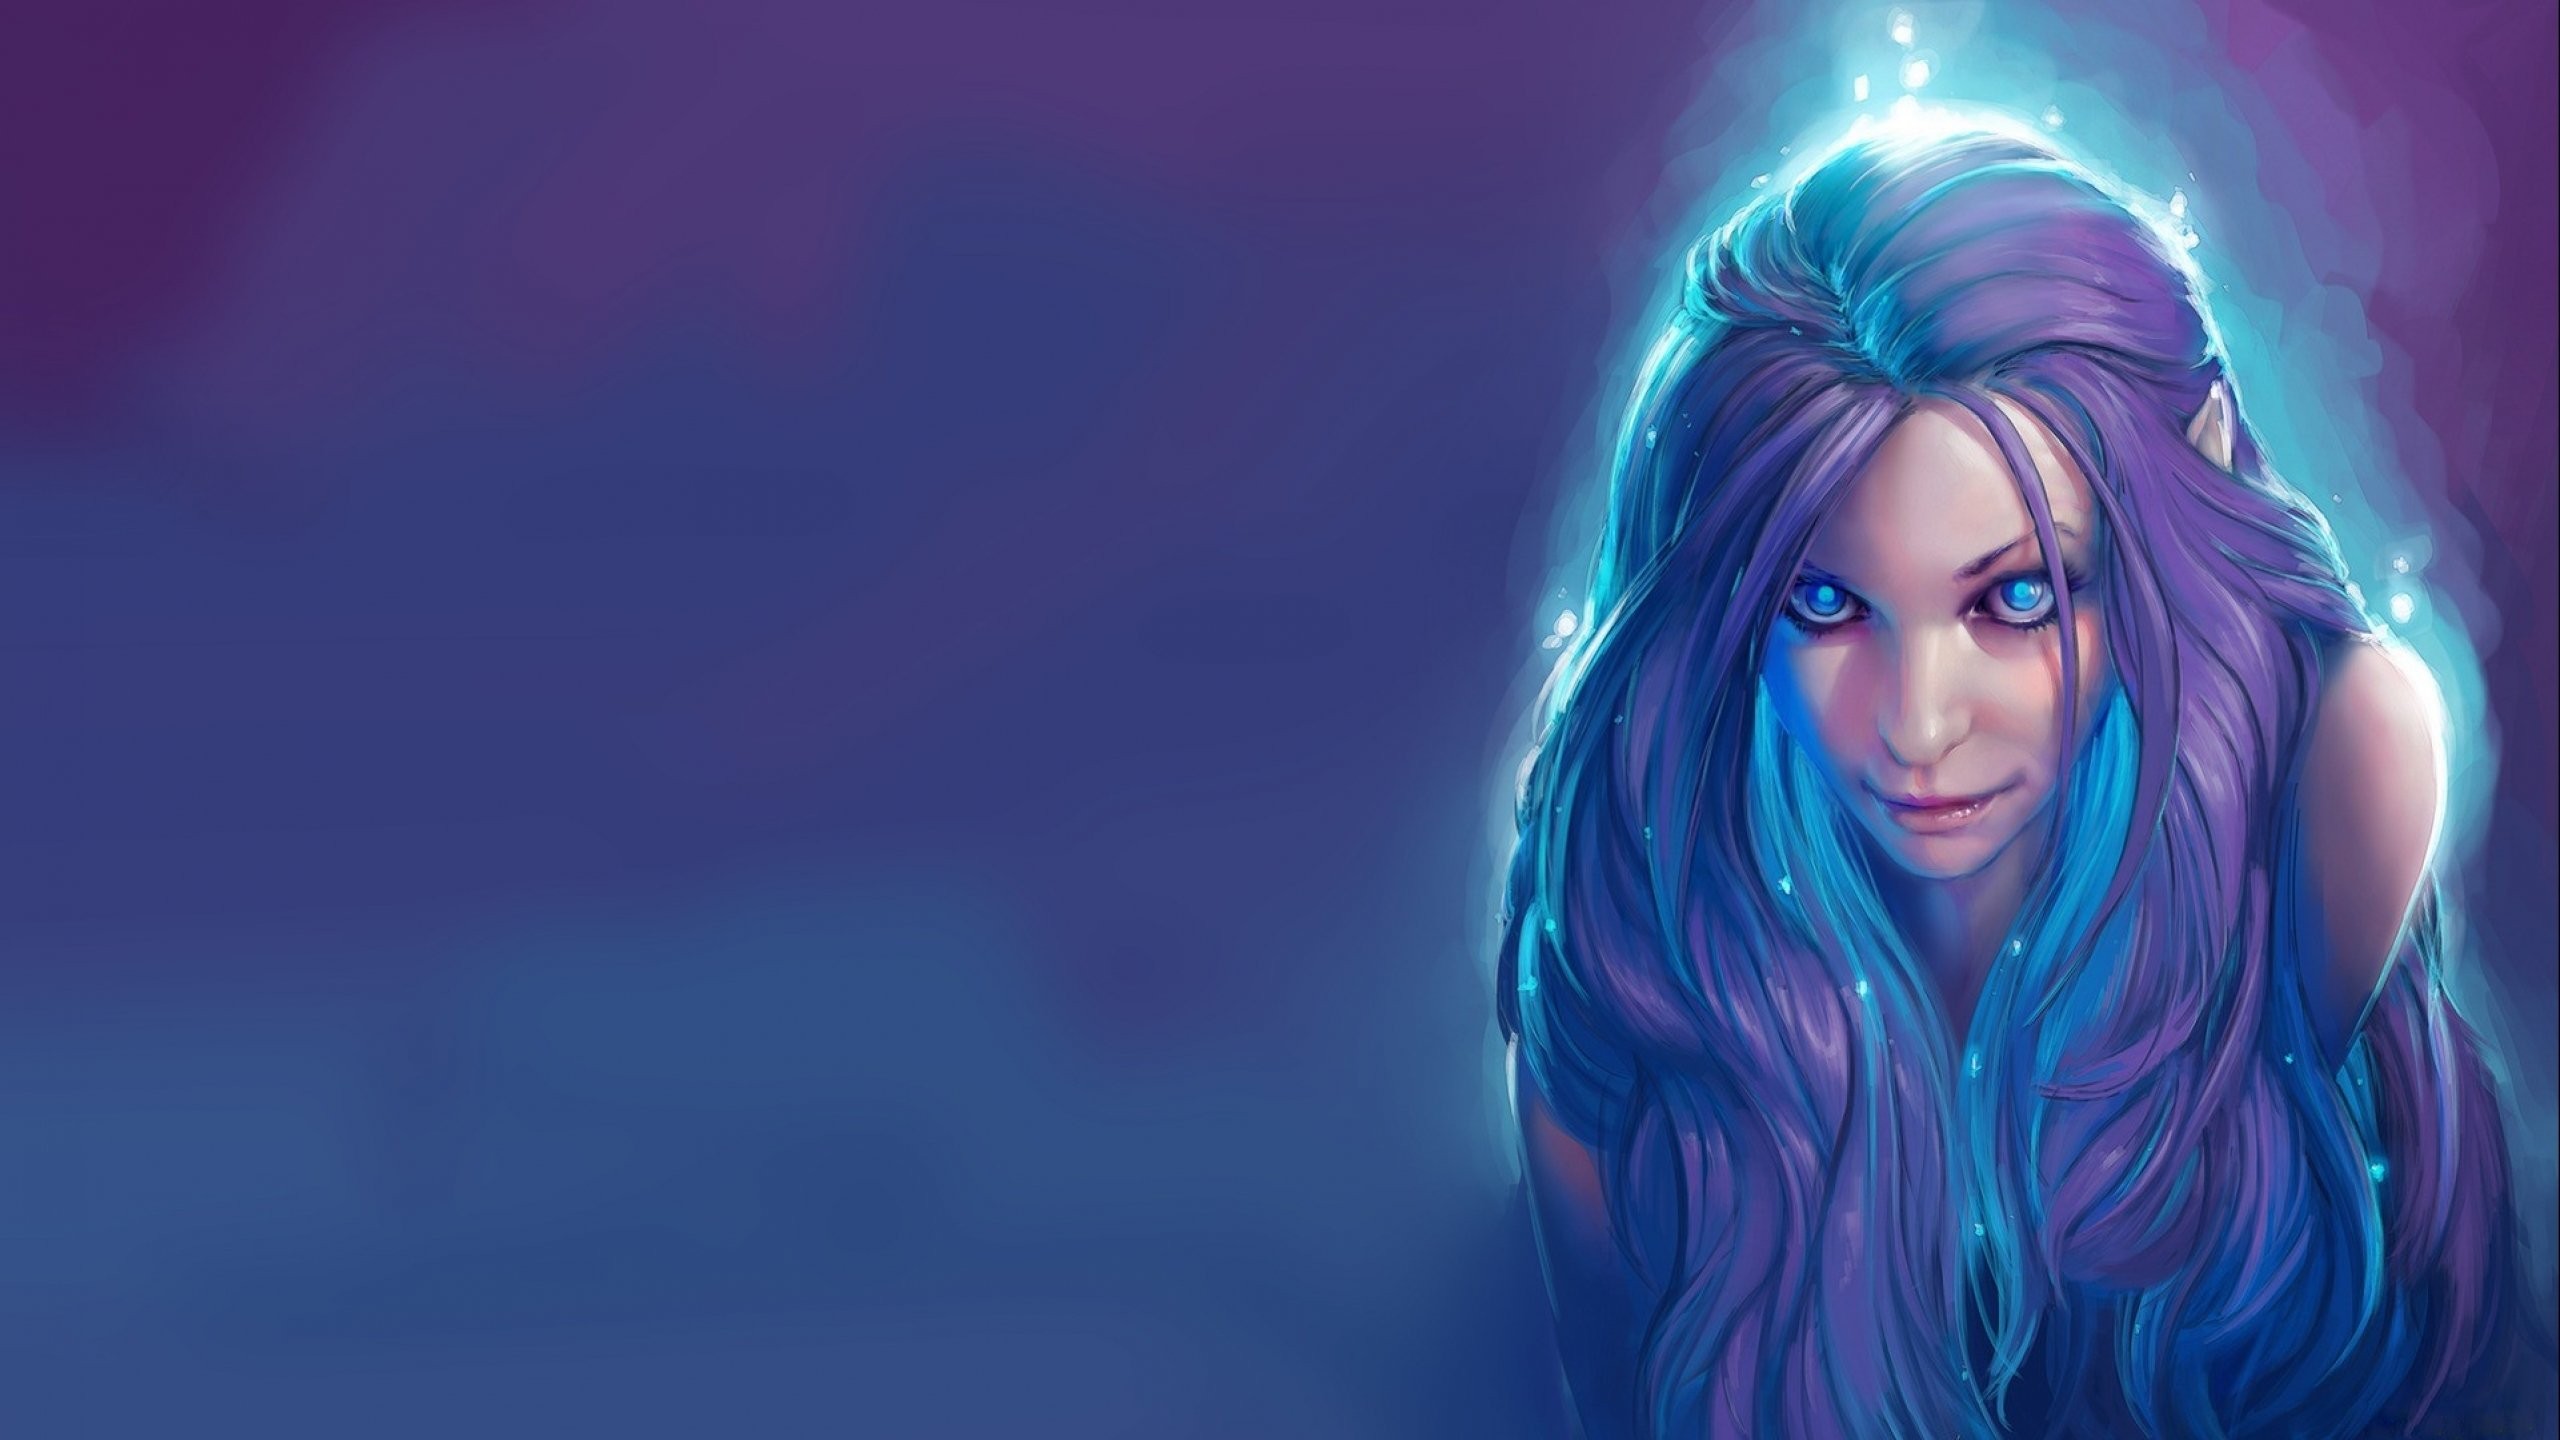 women, Blue hair, Elves, Artwork, Fantasy art Wallpaper